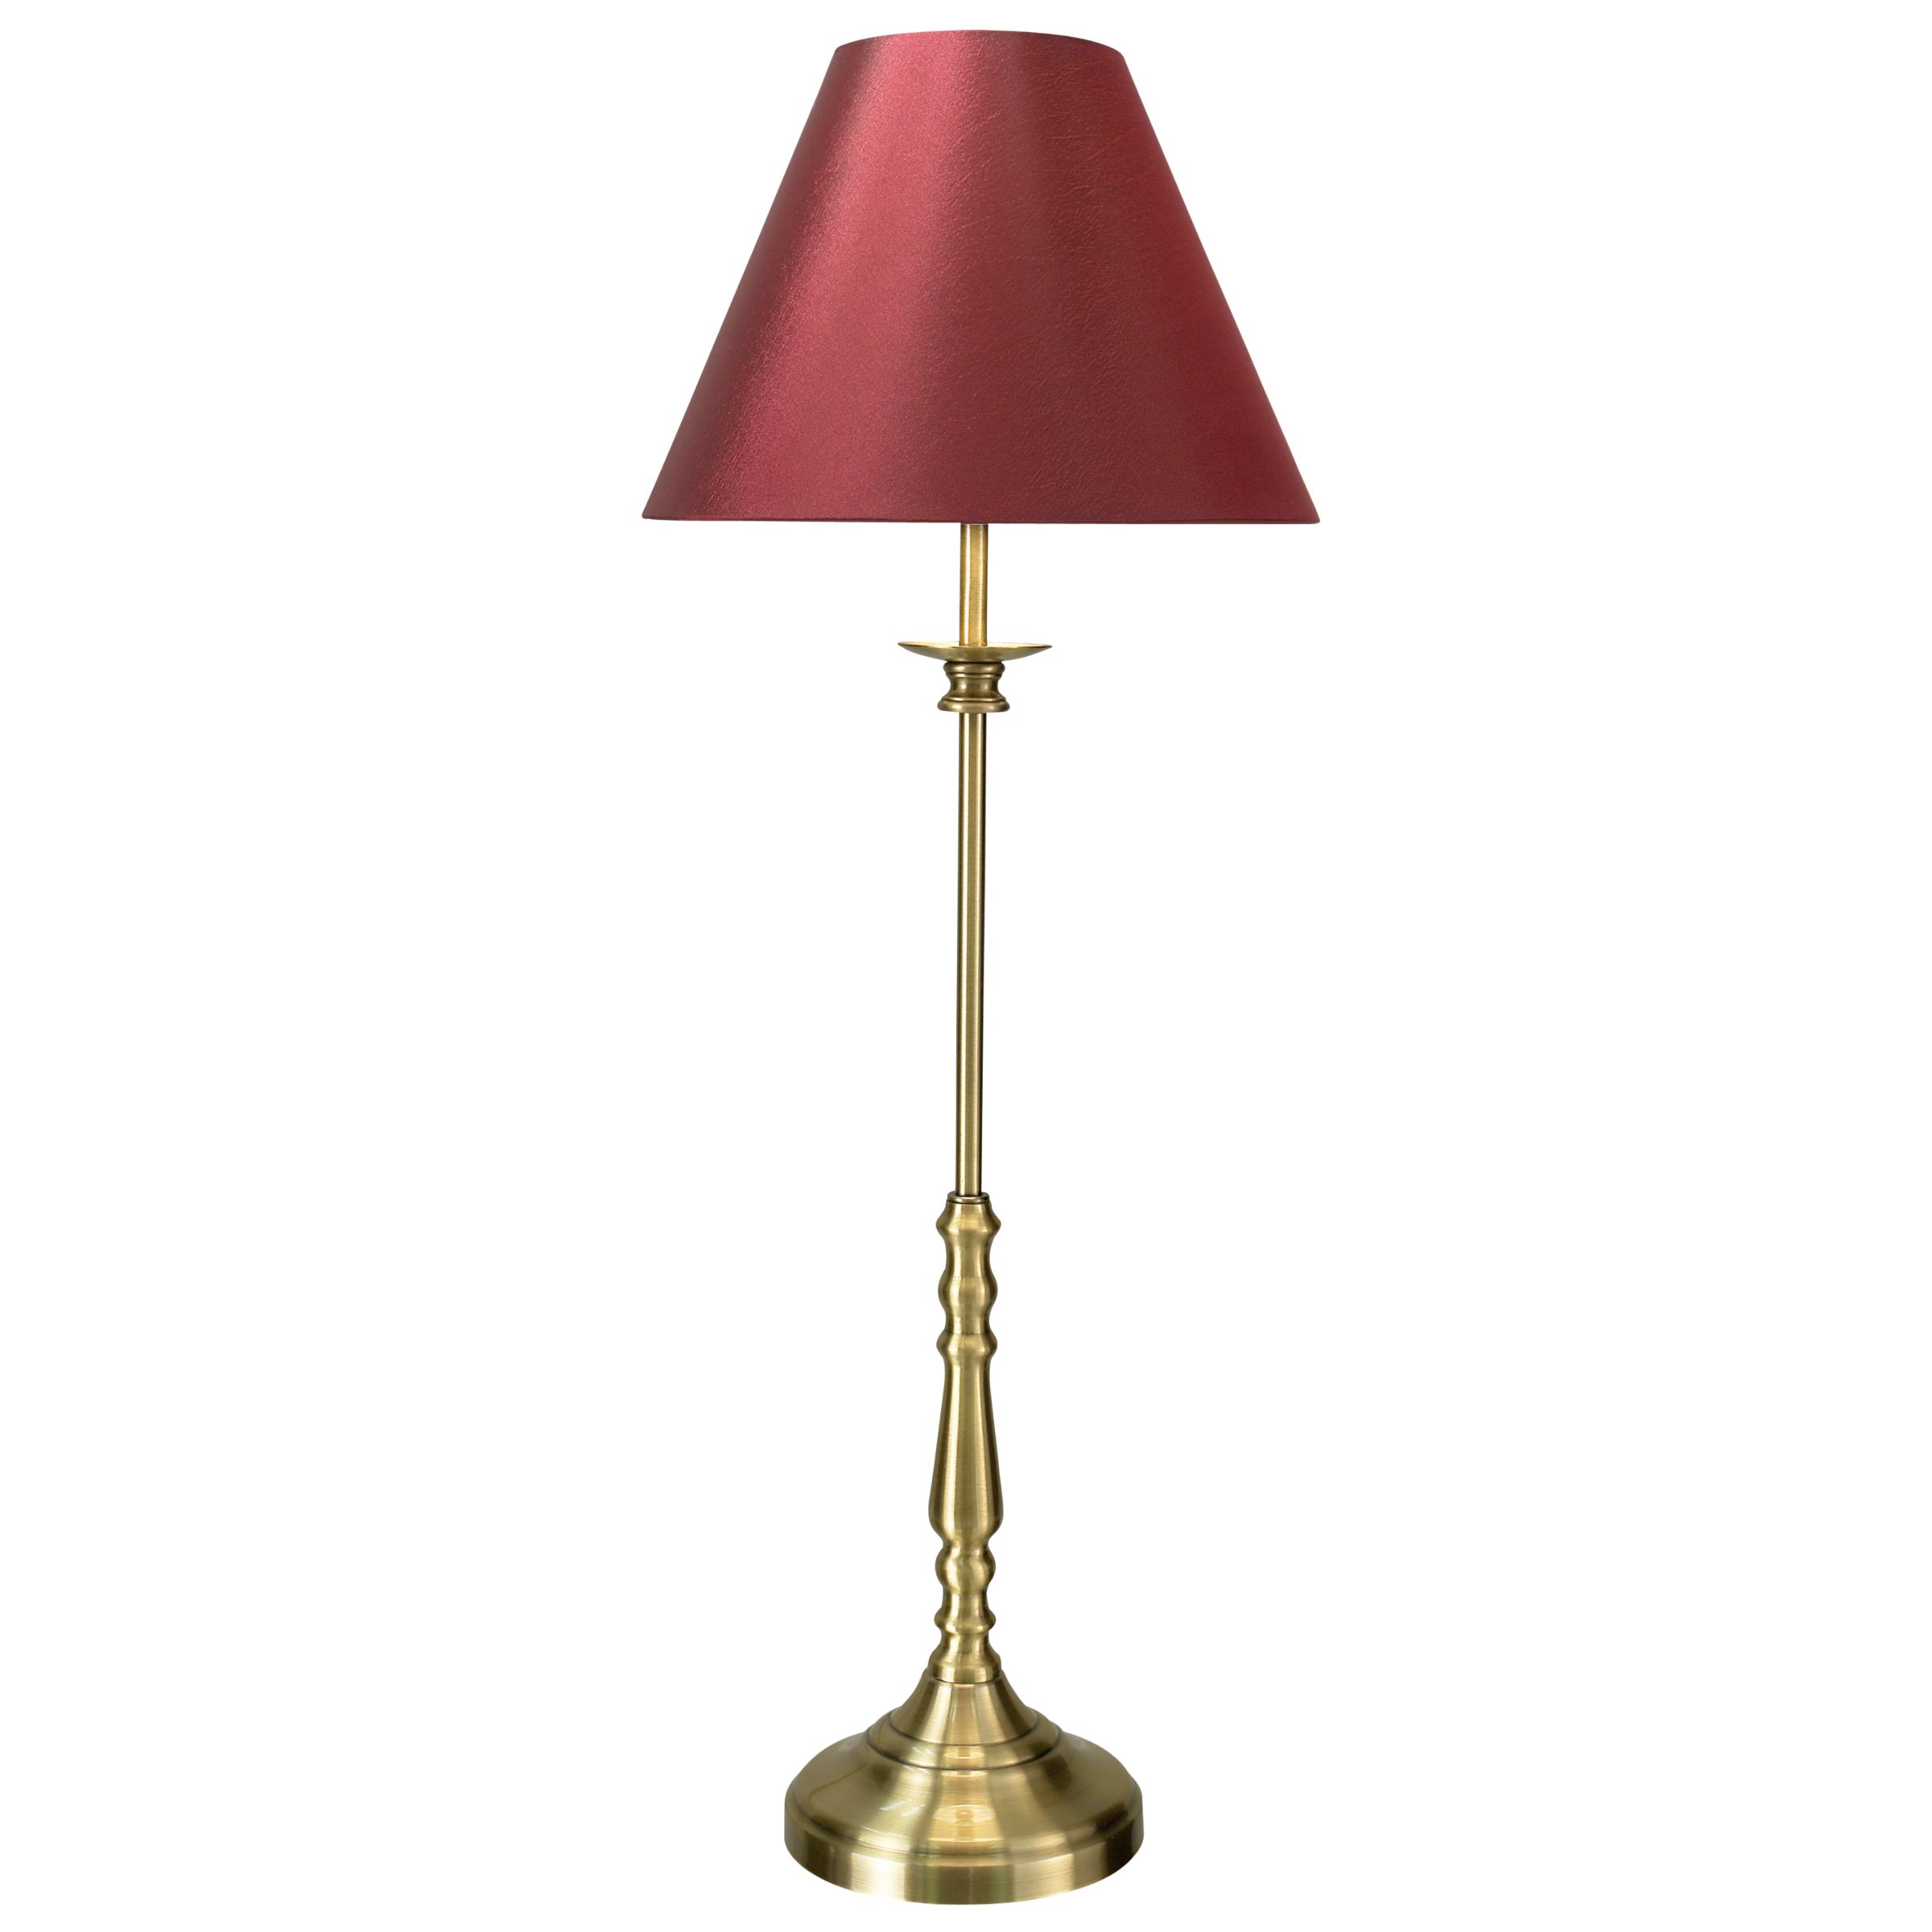 John Lewis Sloane Table Lamp, Claret